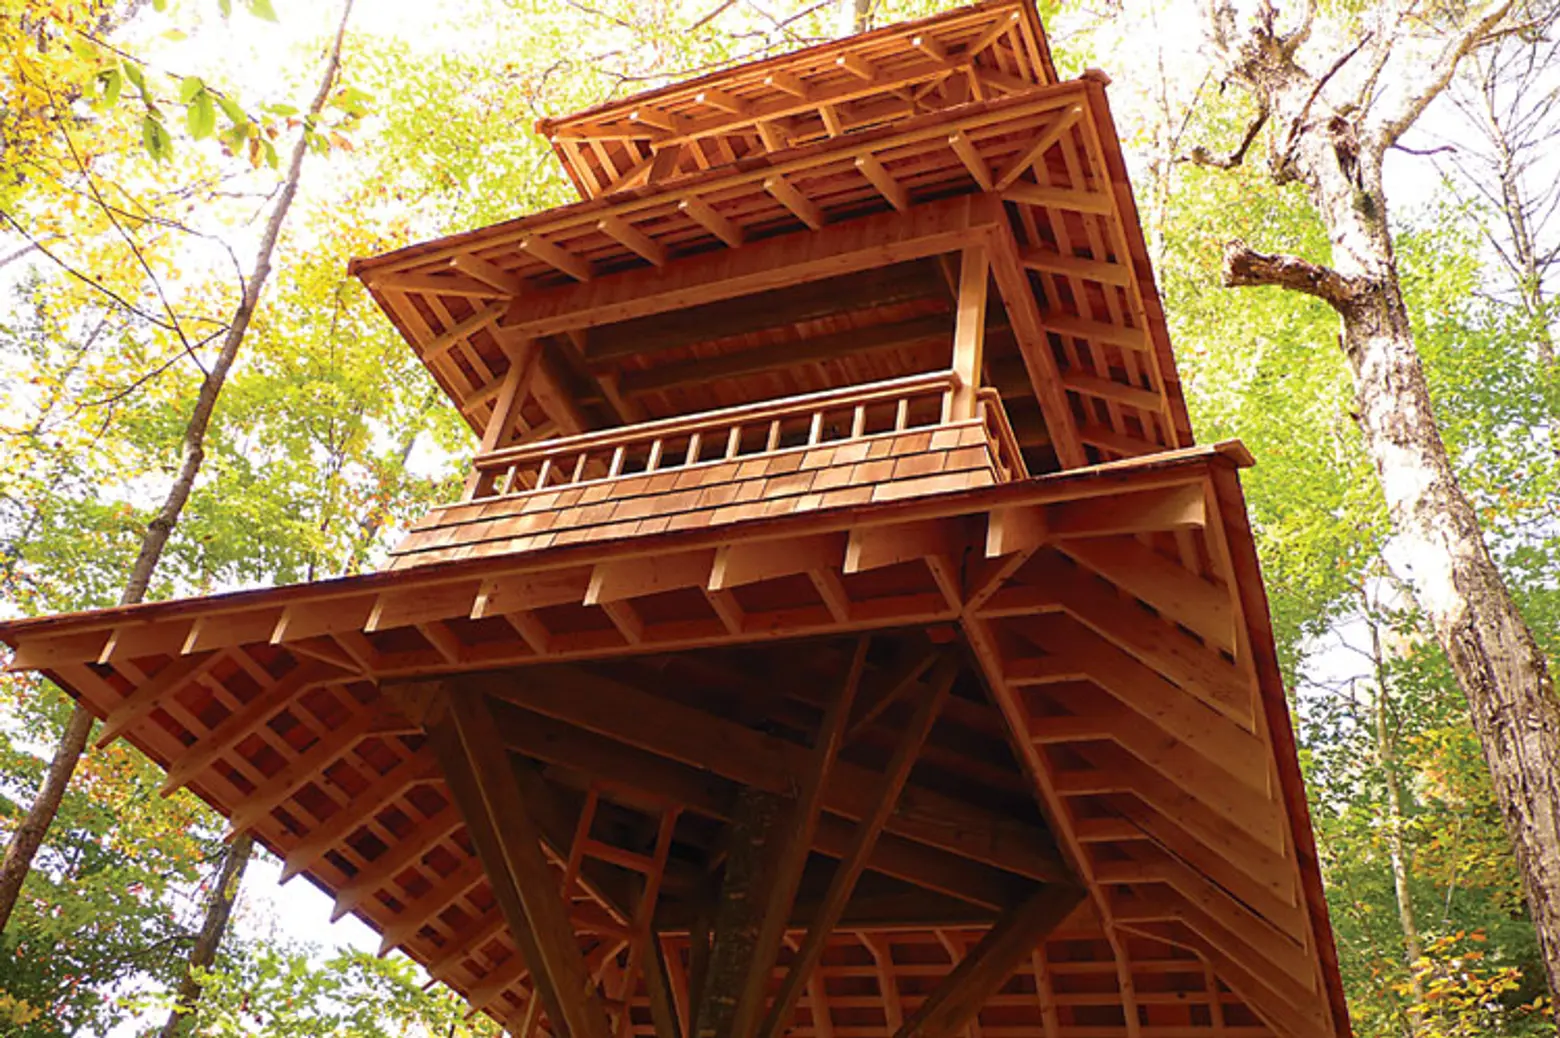 Long Lake Treehouse designed by Luderowski Architect